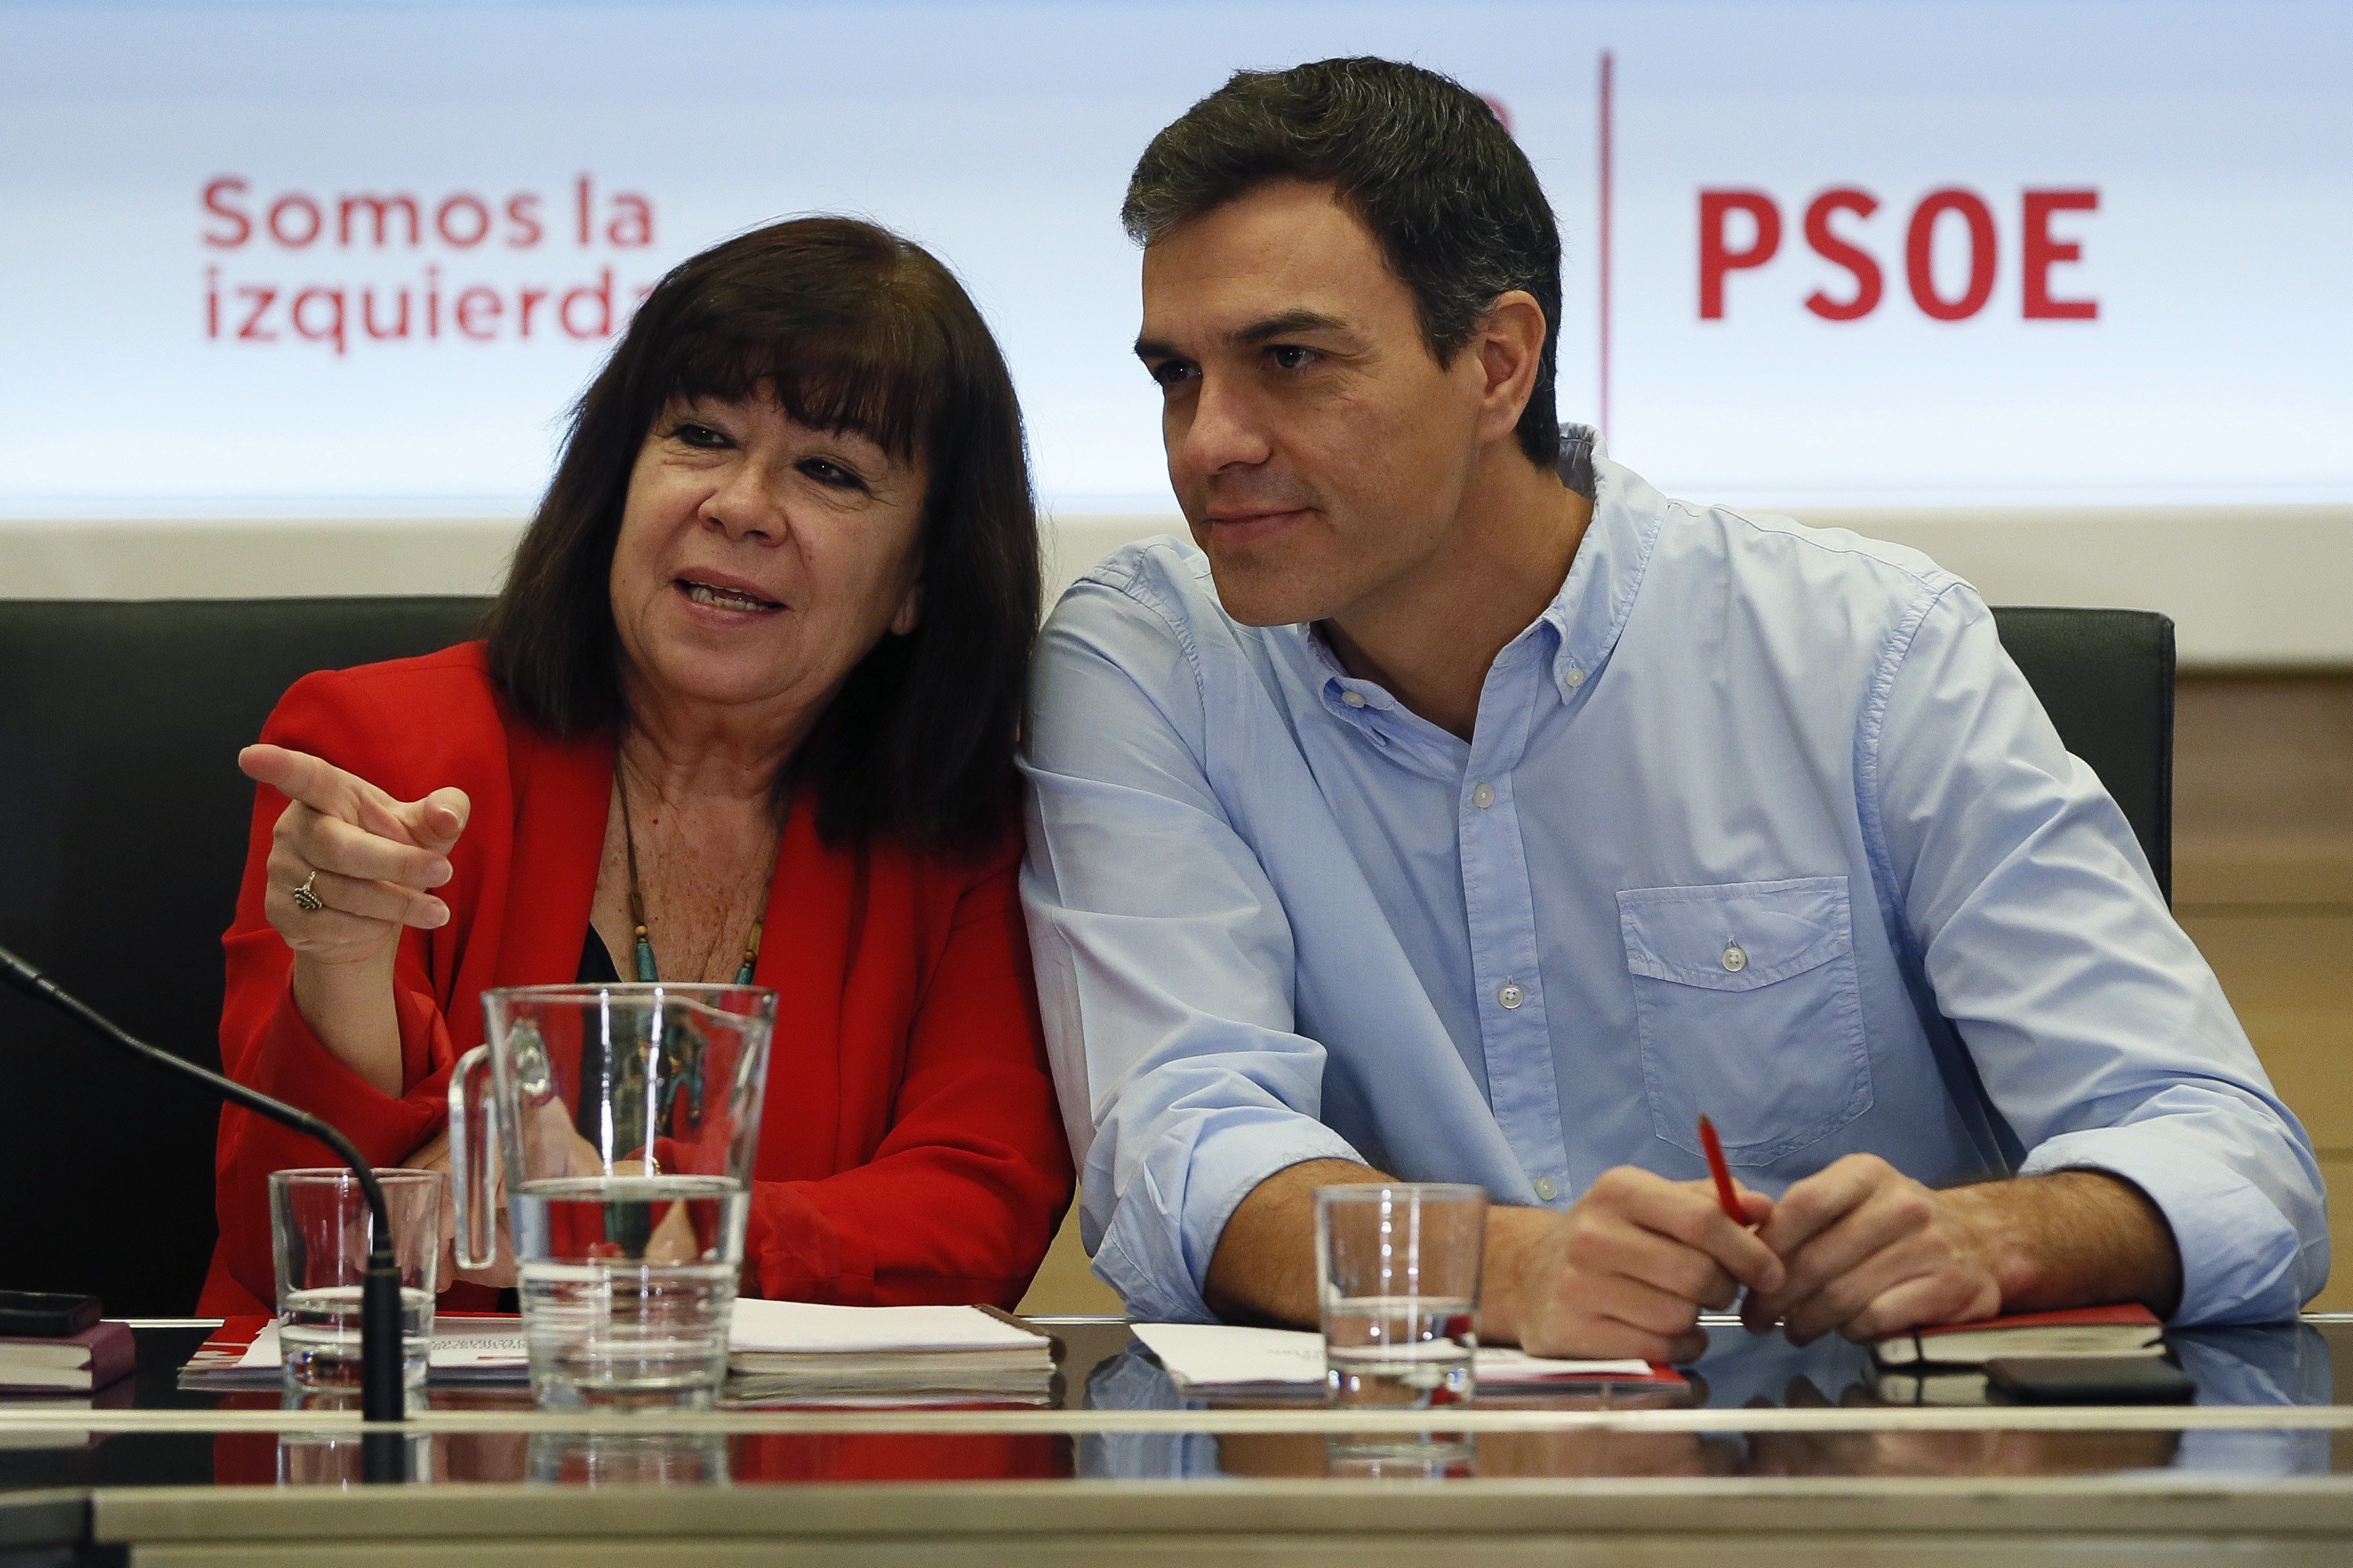 El PSOE demana "mesures polítiques" per evitar el referèndum